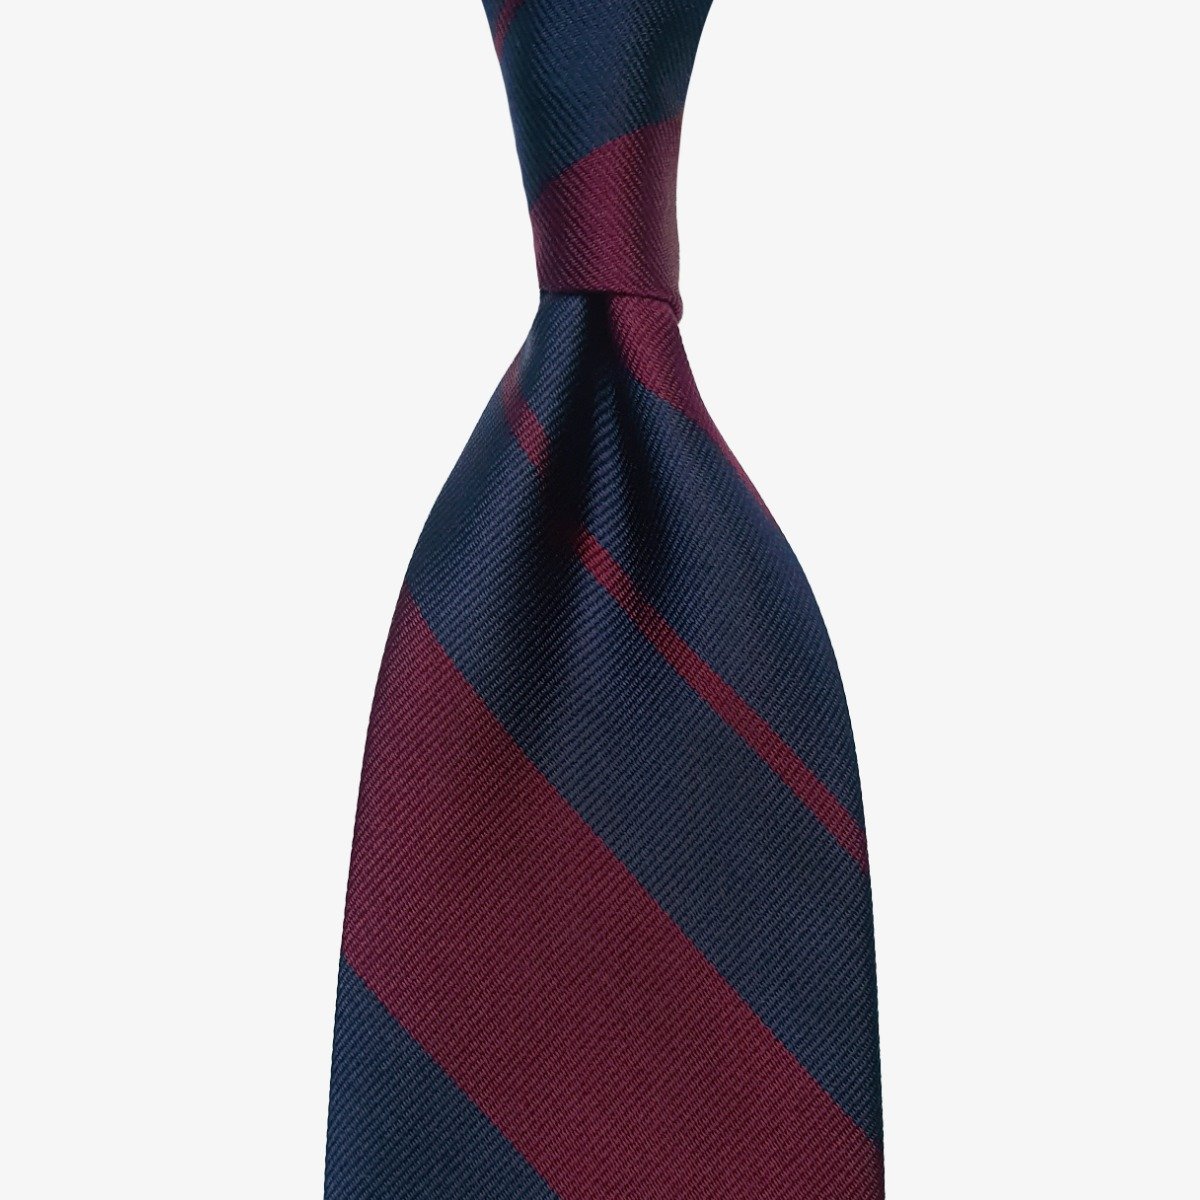 Shibumi Firenze mėlynas ir raudonas dryžuotas šilkinis kaklaraištis